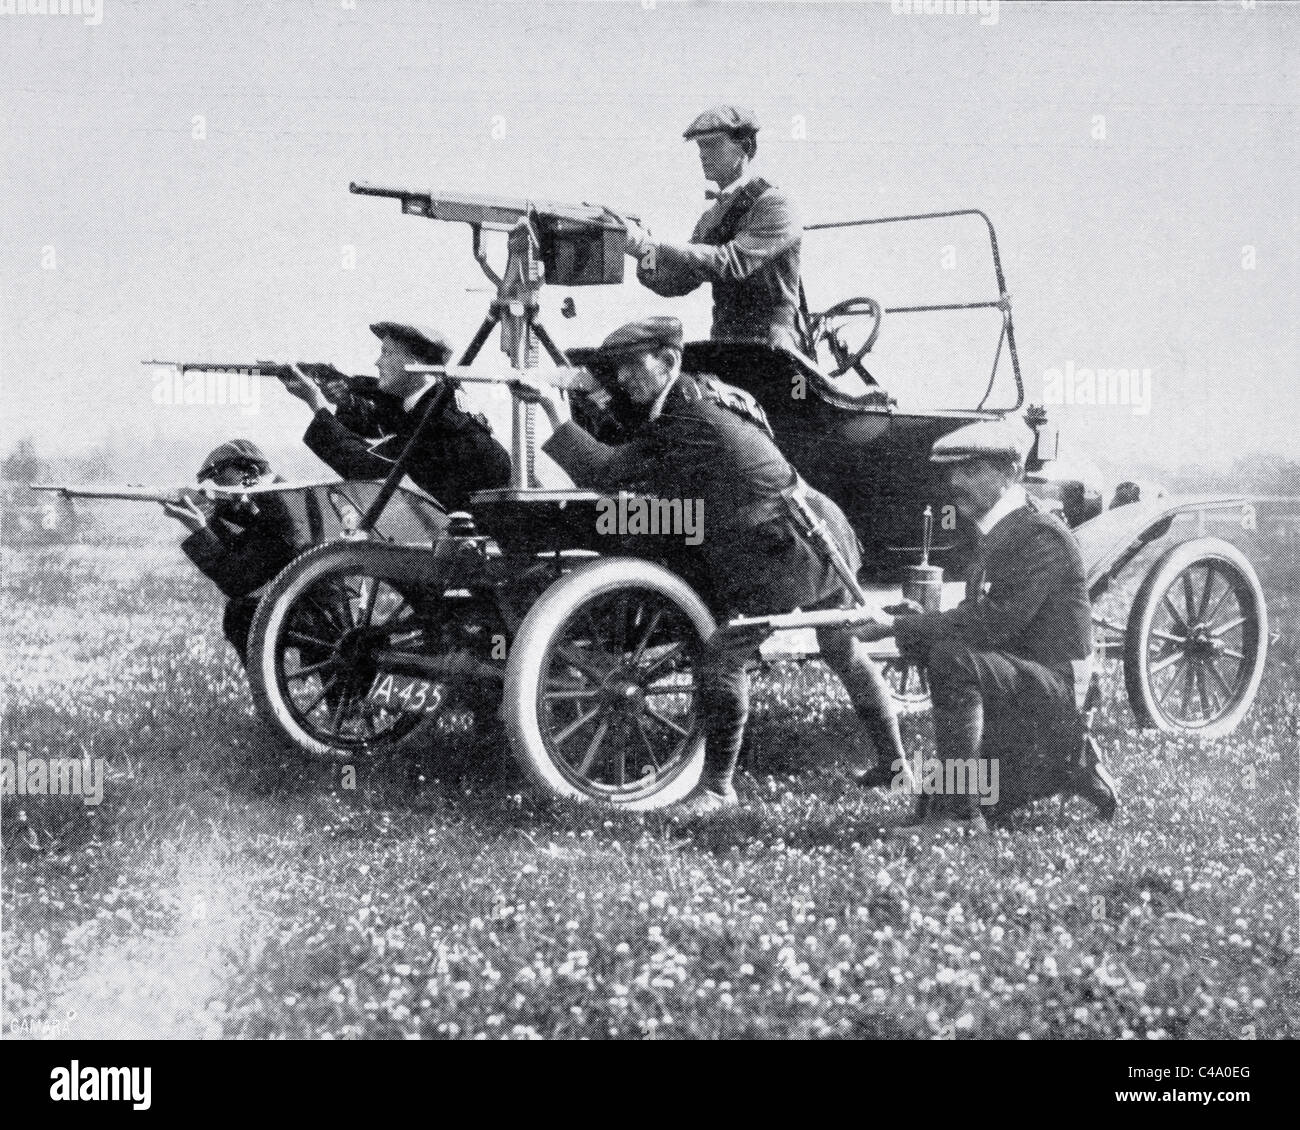 Les membres de l'Ulster Volunteer Force mobile avec machine gun, photographié en 1914 au cours de la crise. Banque D'Images